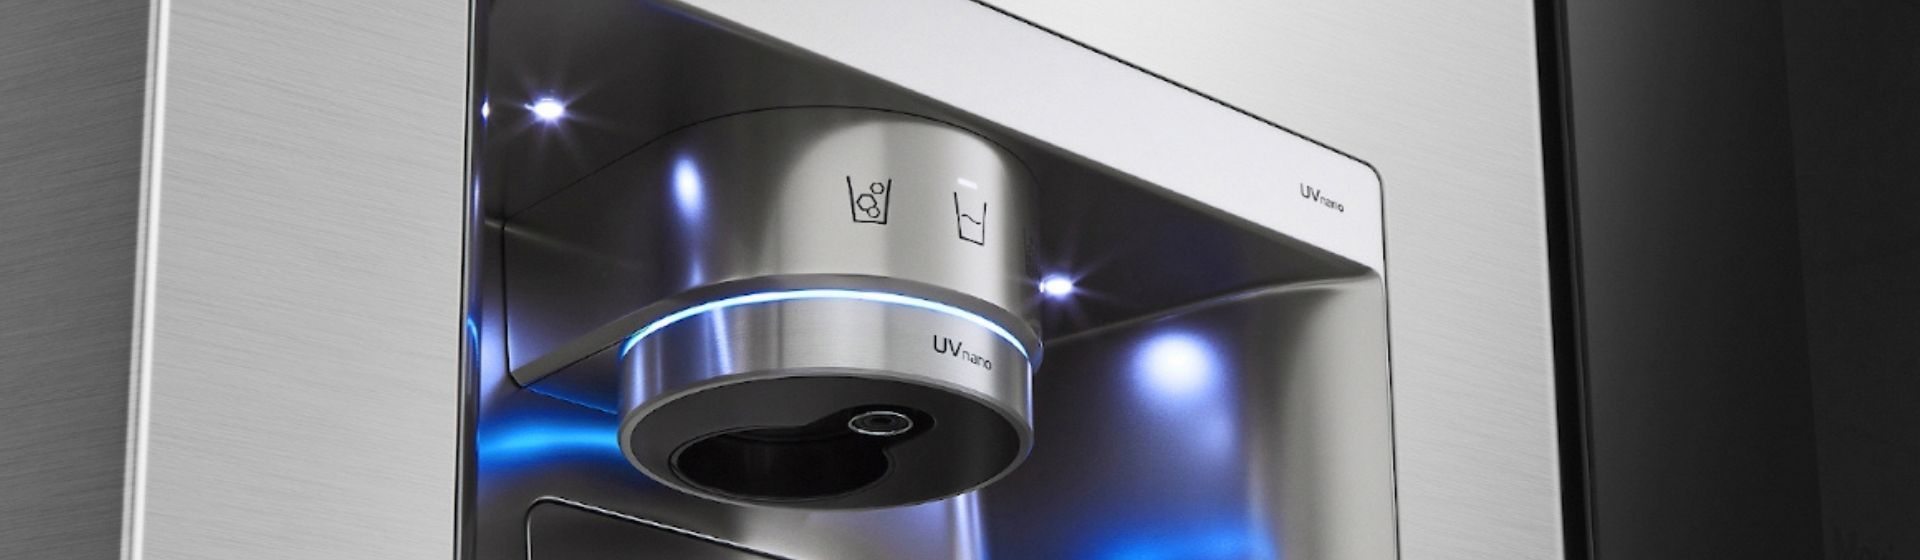 Nova Geladeira LG inteligente terá luz ultravioleta e comando de voz: saiba mais sobre o modelo